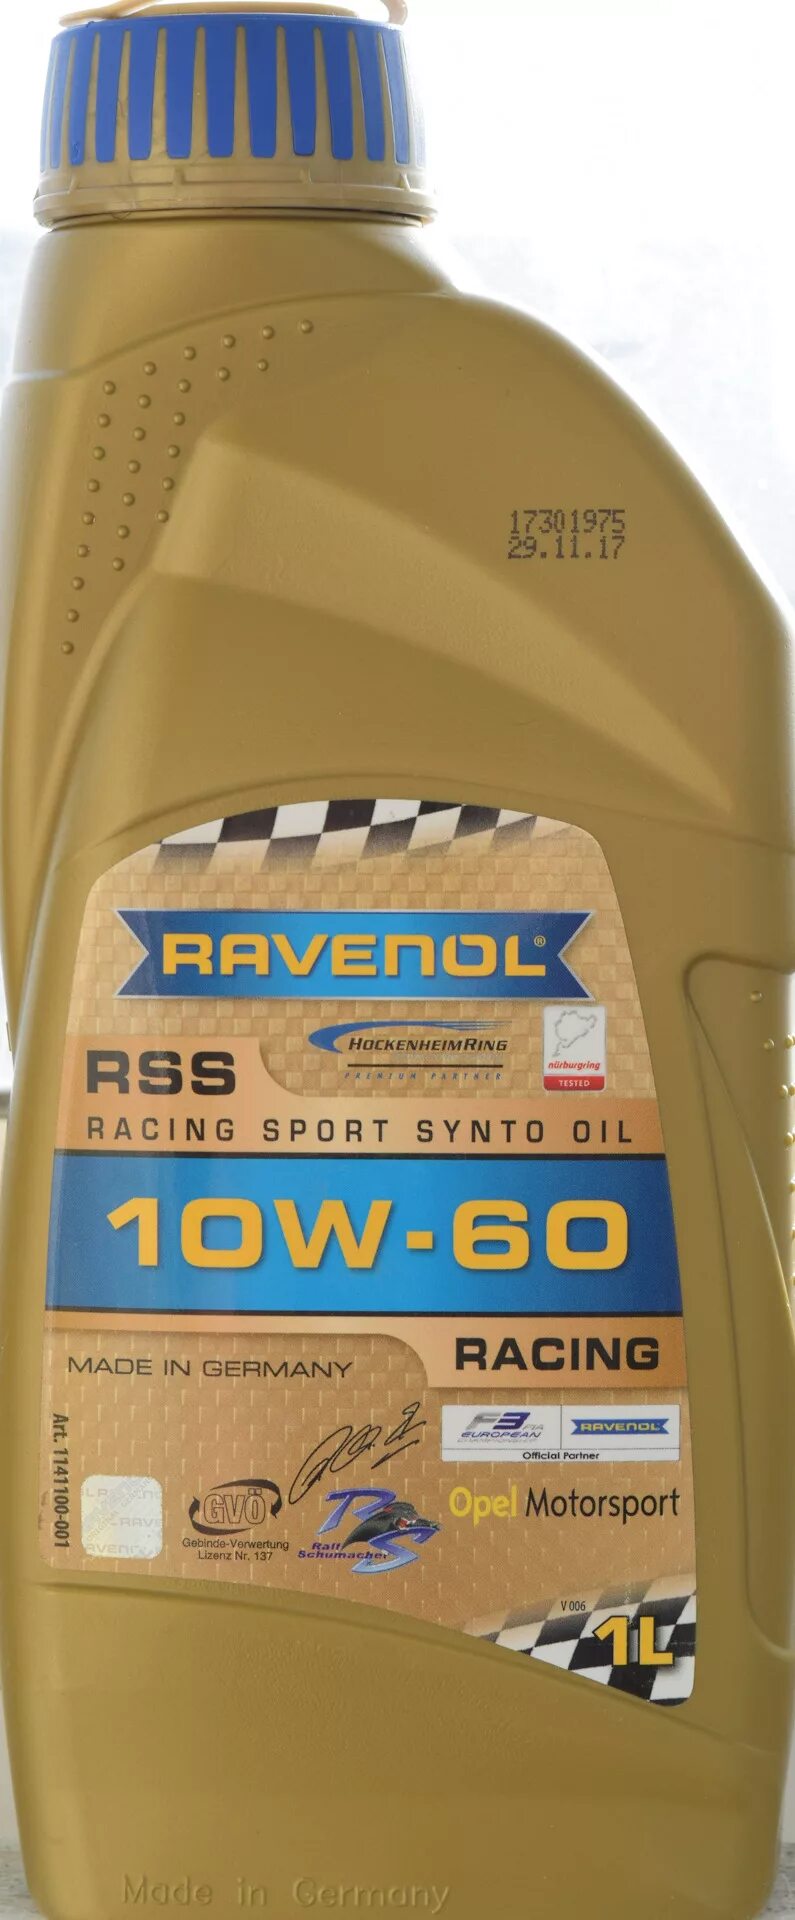 Ravenol 5w50. Равенол 5 w40 Hydrocrack. Ravenol 5w50 Racing. Равенол ПАО масла. Масло равенол 10w